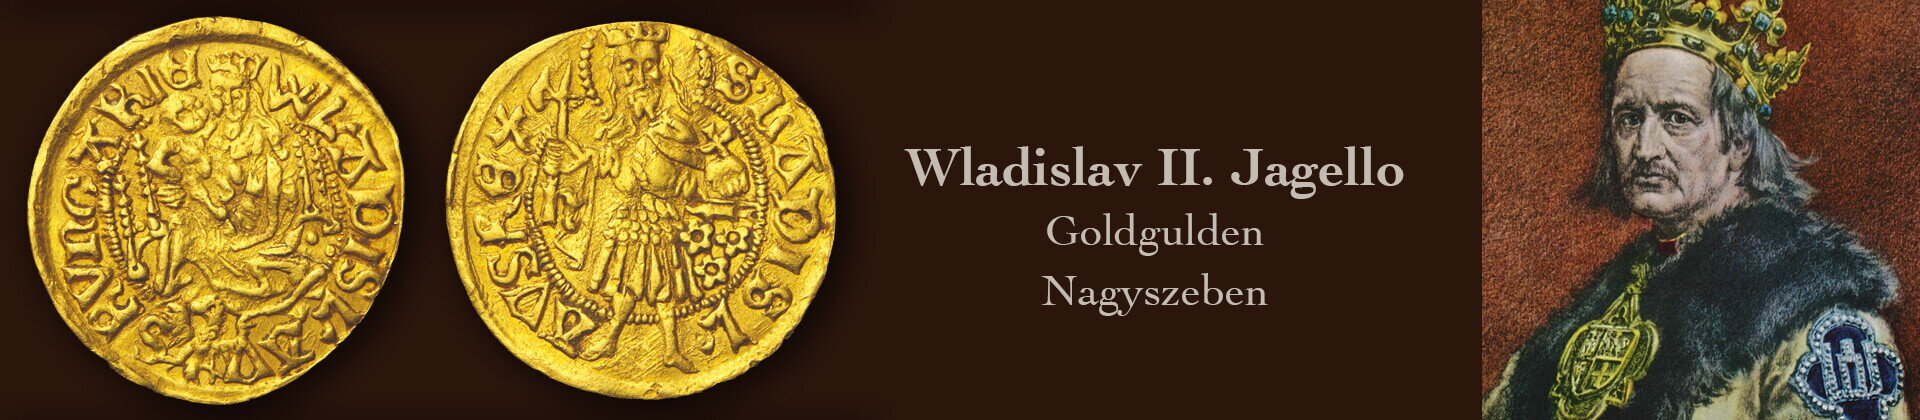 Wladislav II Jagello - goldgulden